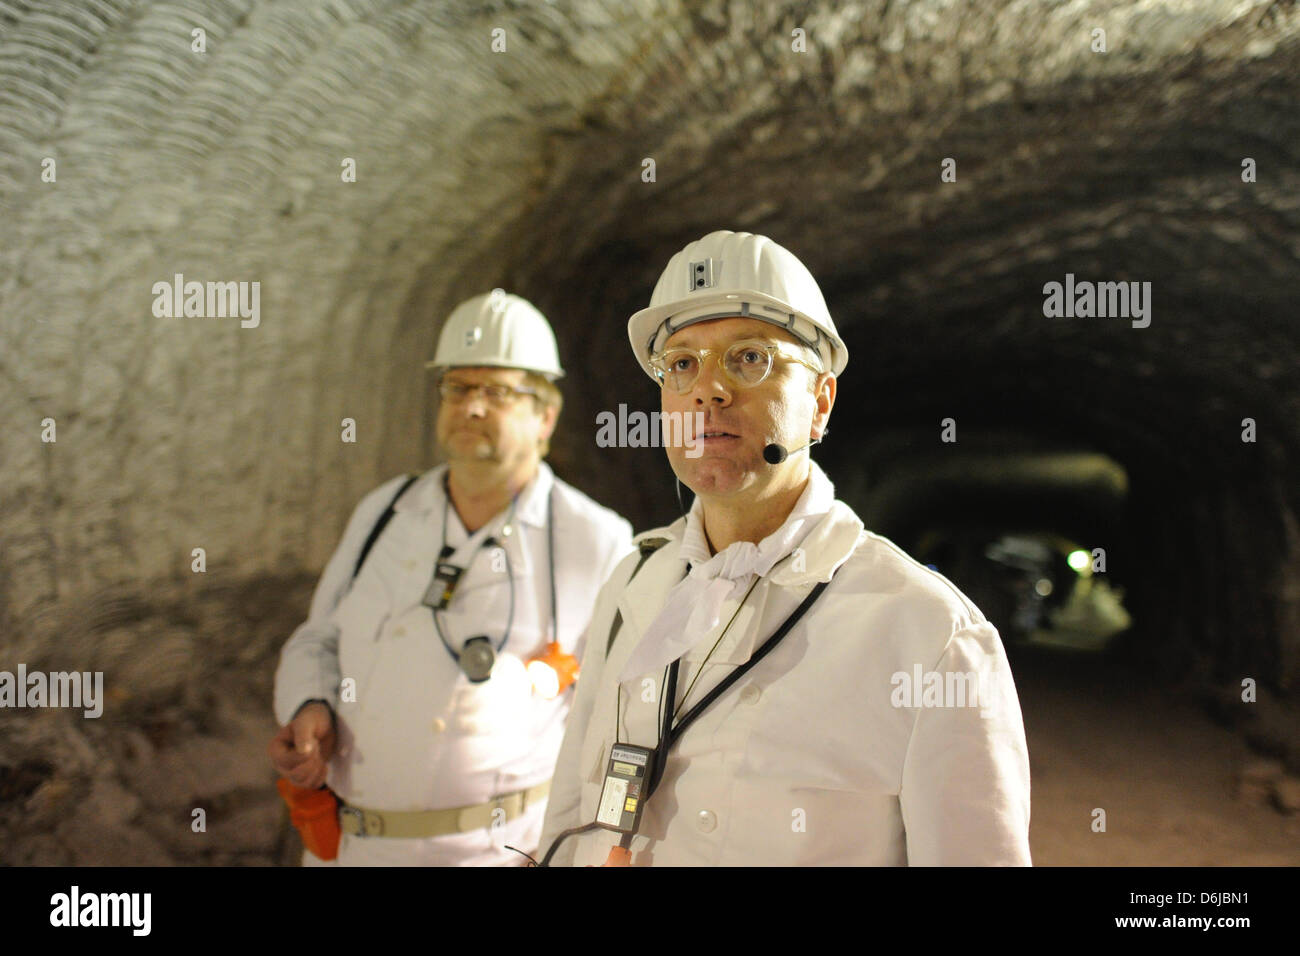 Bundesumweltminister Norbert Roettgen (CDU) steht am Montag (12.03.12) waehrend einer Besichtigung des Atommuelllagers Asse II bei Remlingen Mit einem Helm auf seinem Kopf in einem Gang. Foto Stock